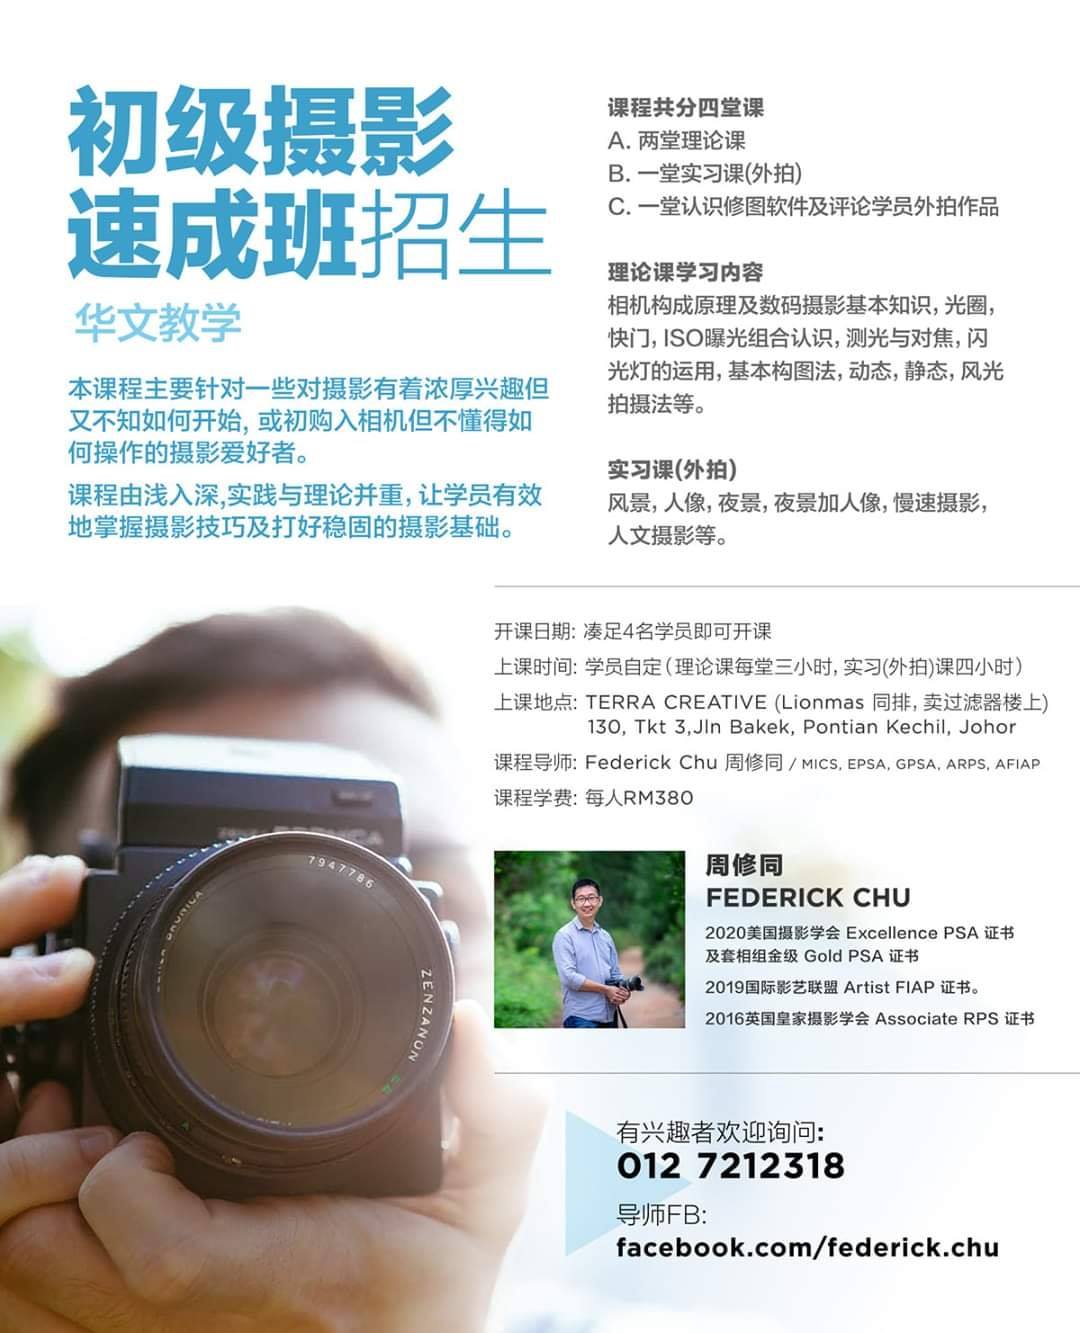 摄影课程 马来西亚摄影老师 全职摄影人 摄影师 摄影导师 摄影指导 Federick Chu Siew Thong Malaysia Photographer Instructor D02